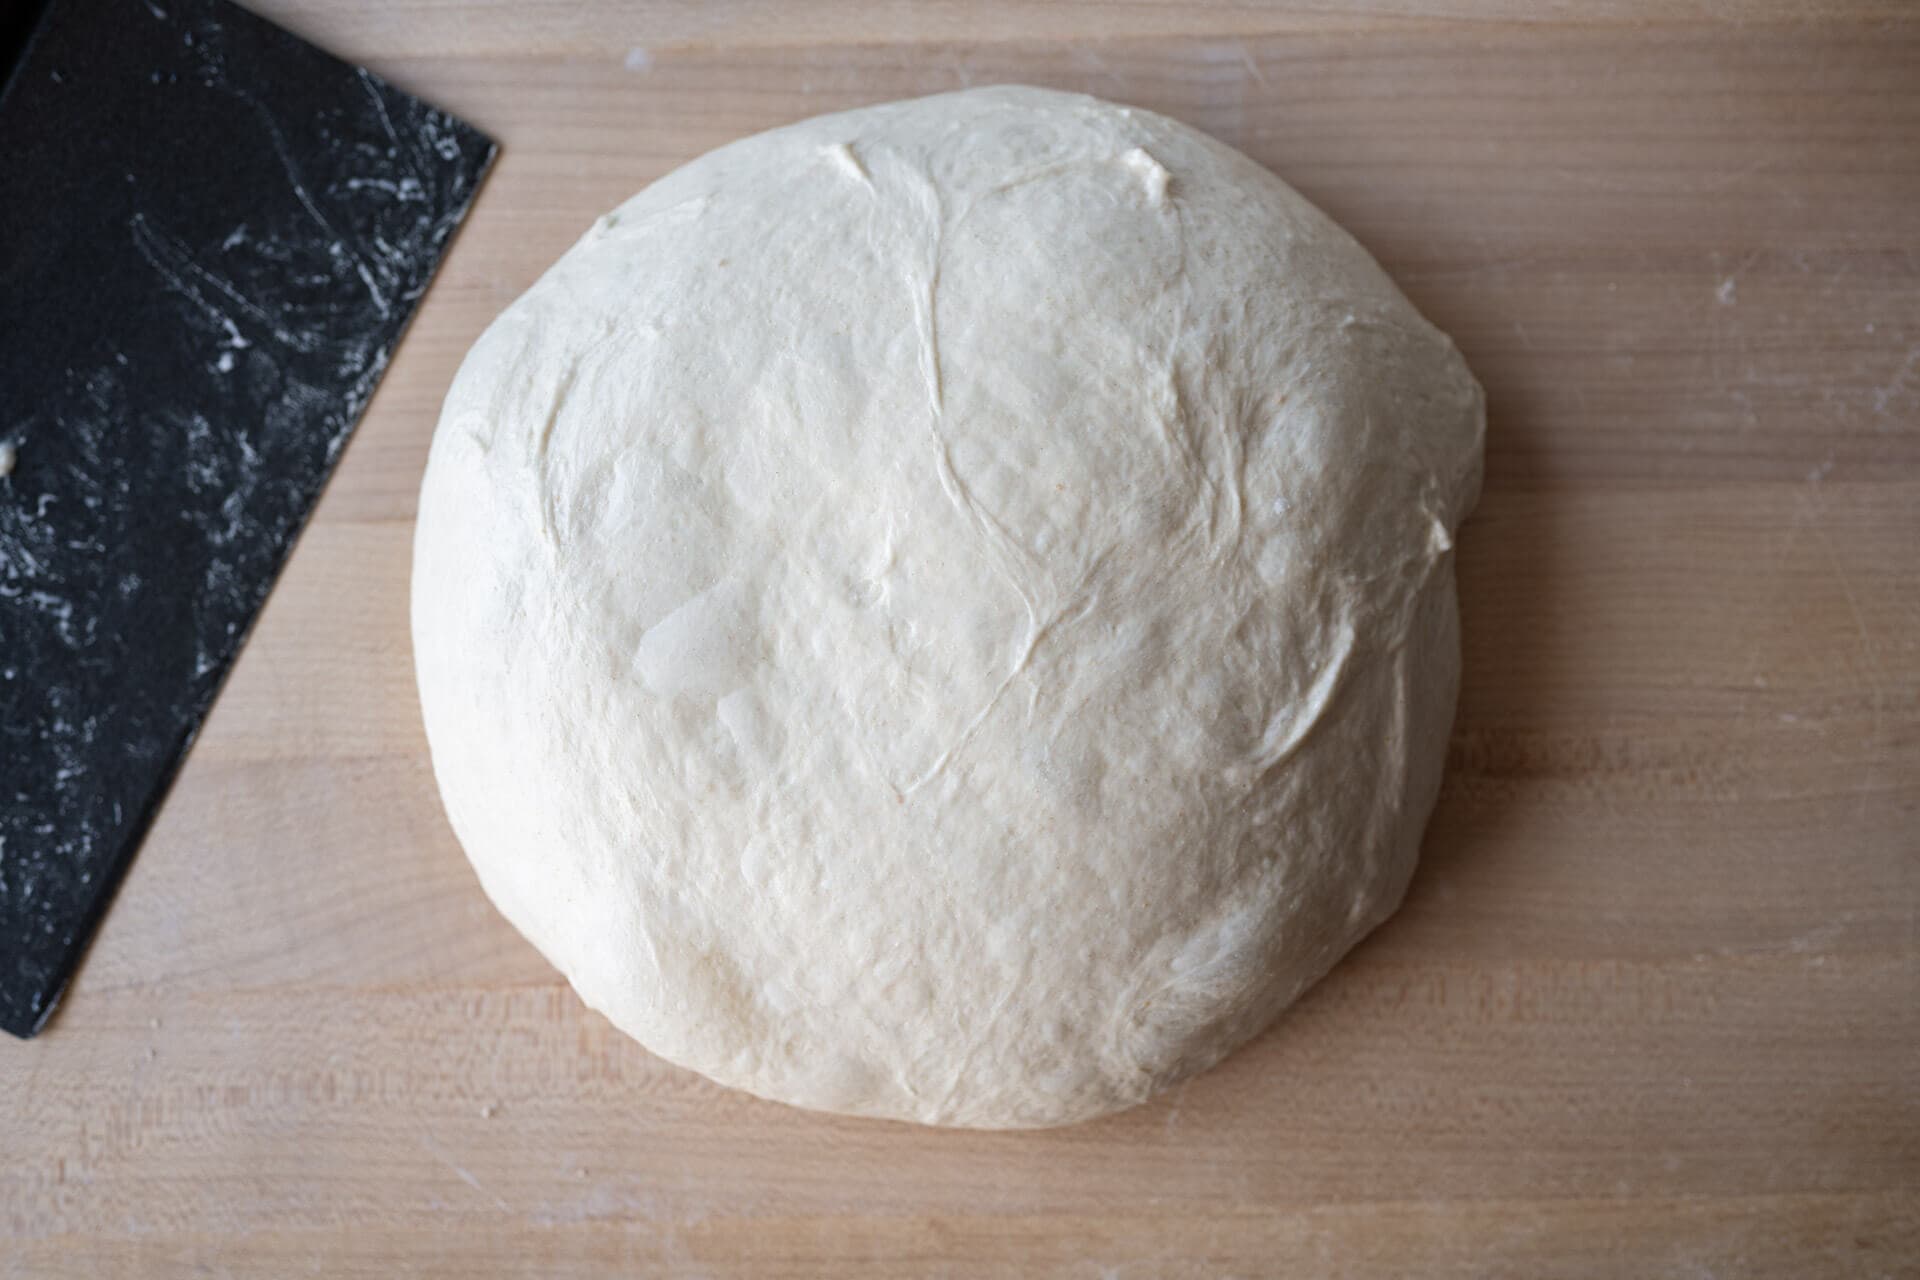 Preshaped bread dough